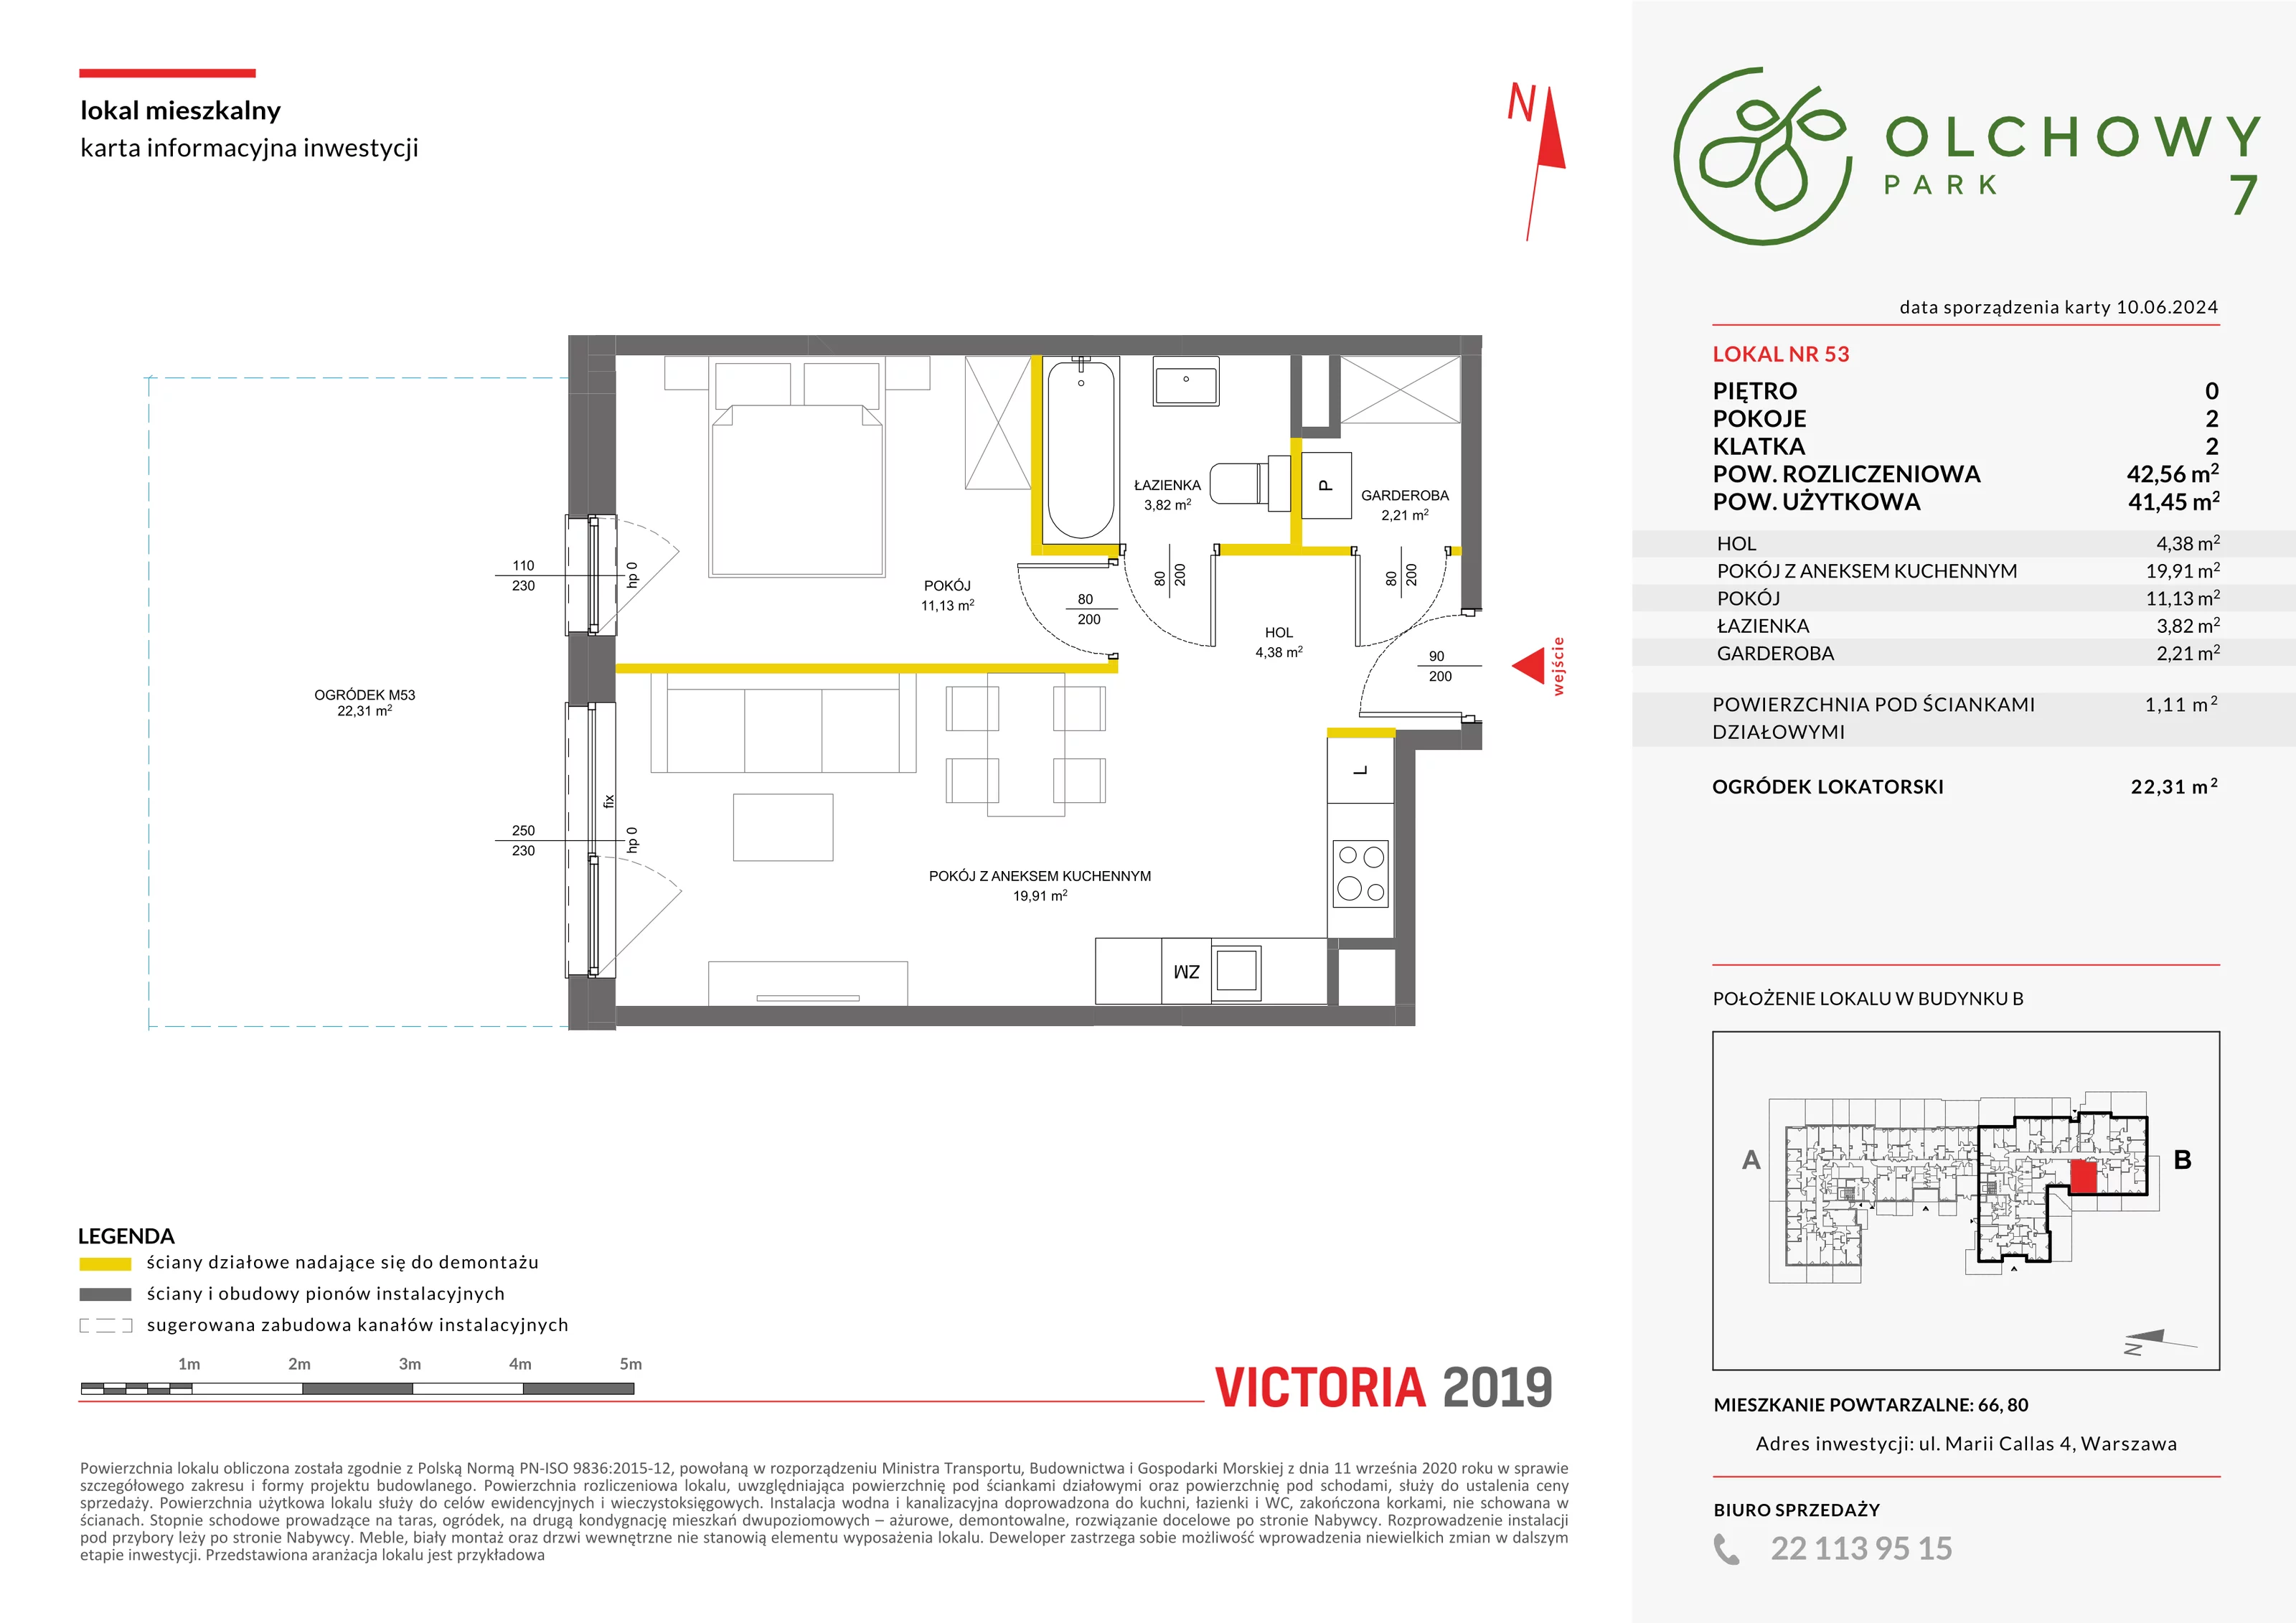 Mieszkanie 42,56 m², parter, oferta nr VII/53, Olchowy Park 7, Warszawa, Białołęka, Kobiałka, ul. Marii Callas 4A